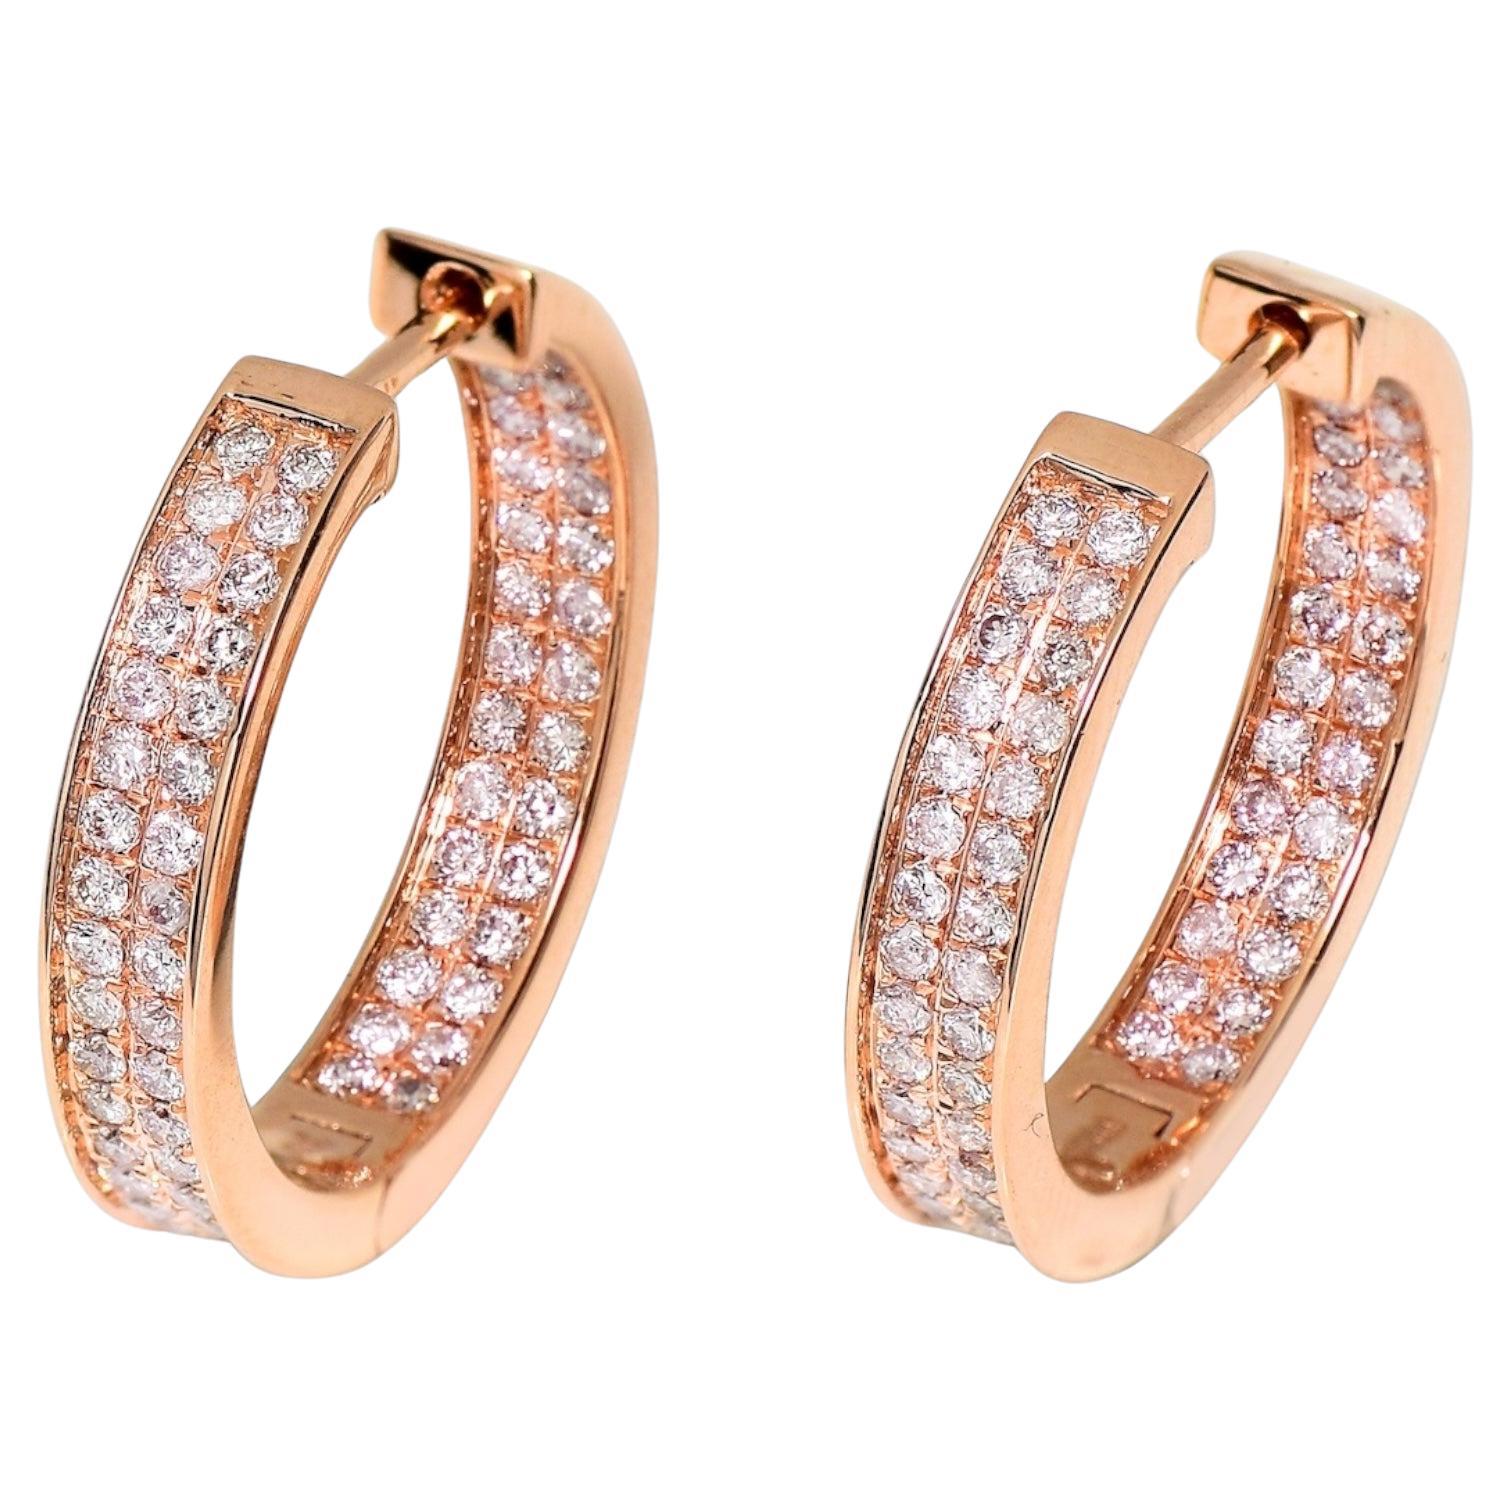 IGI 14K 0.96 ct Natural Pink Diamonds Hoop Earrings For Sale